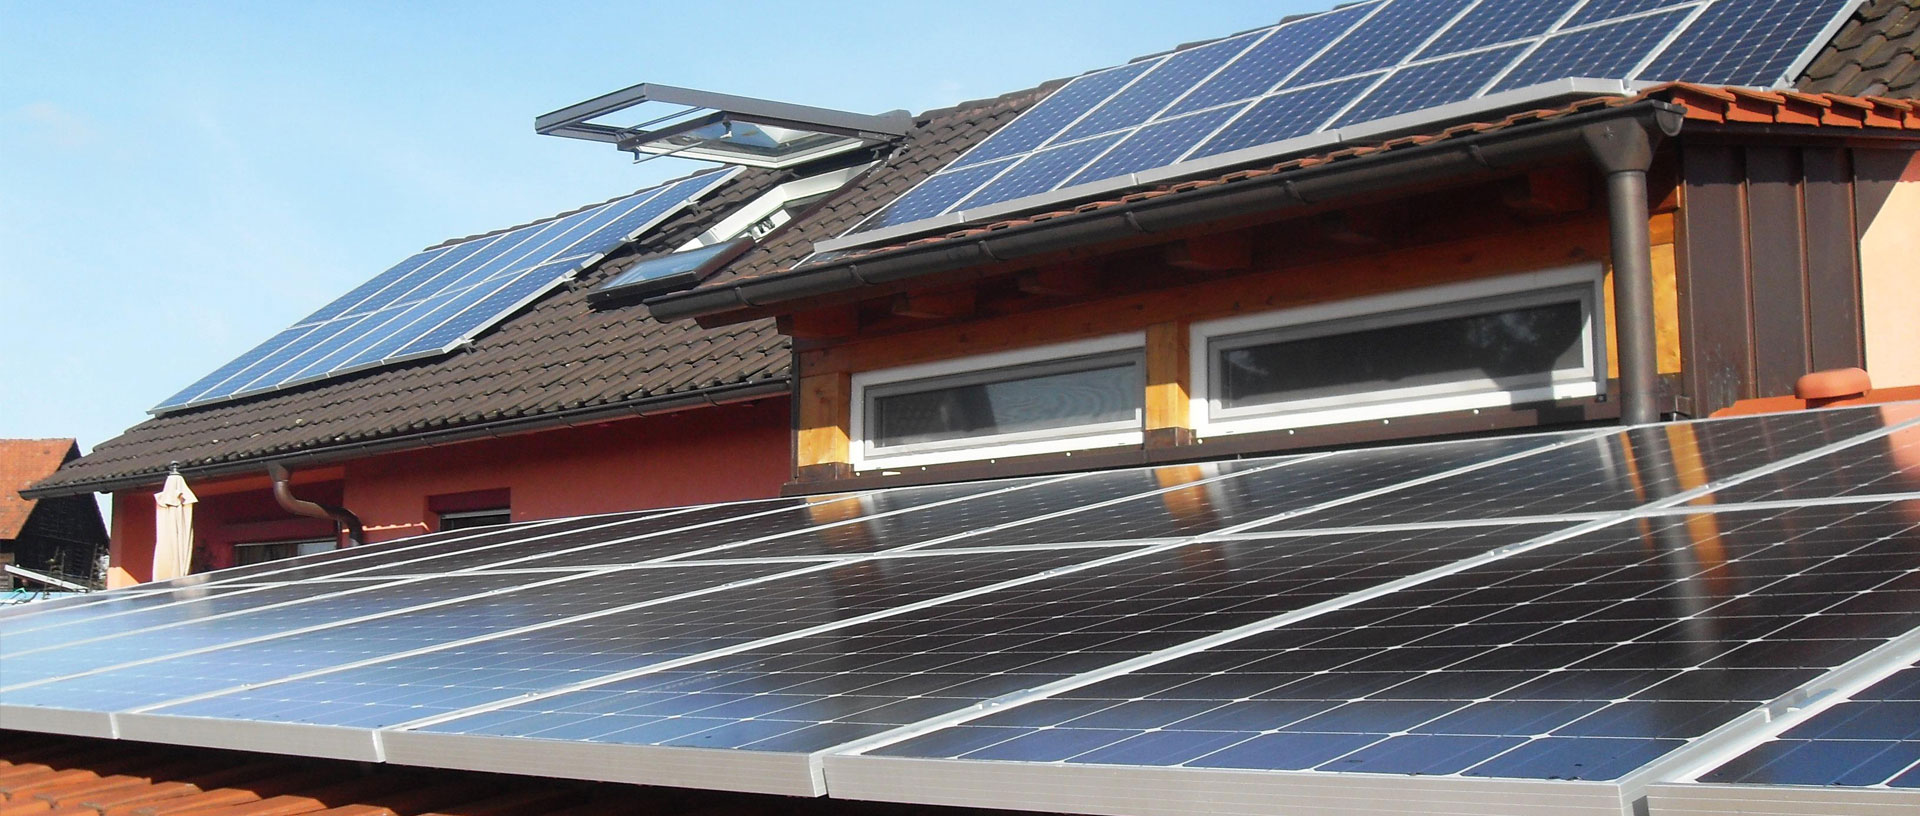 Ràinig gineadh cumhachd photovoltaic ann an Sìona san treas ràith 72.7 billean kWh